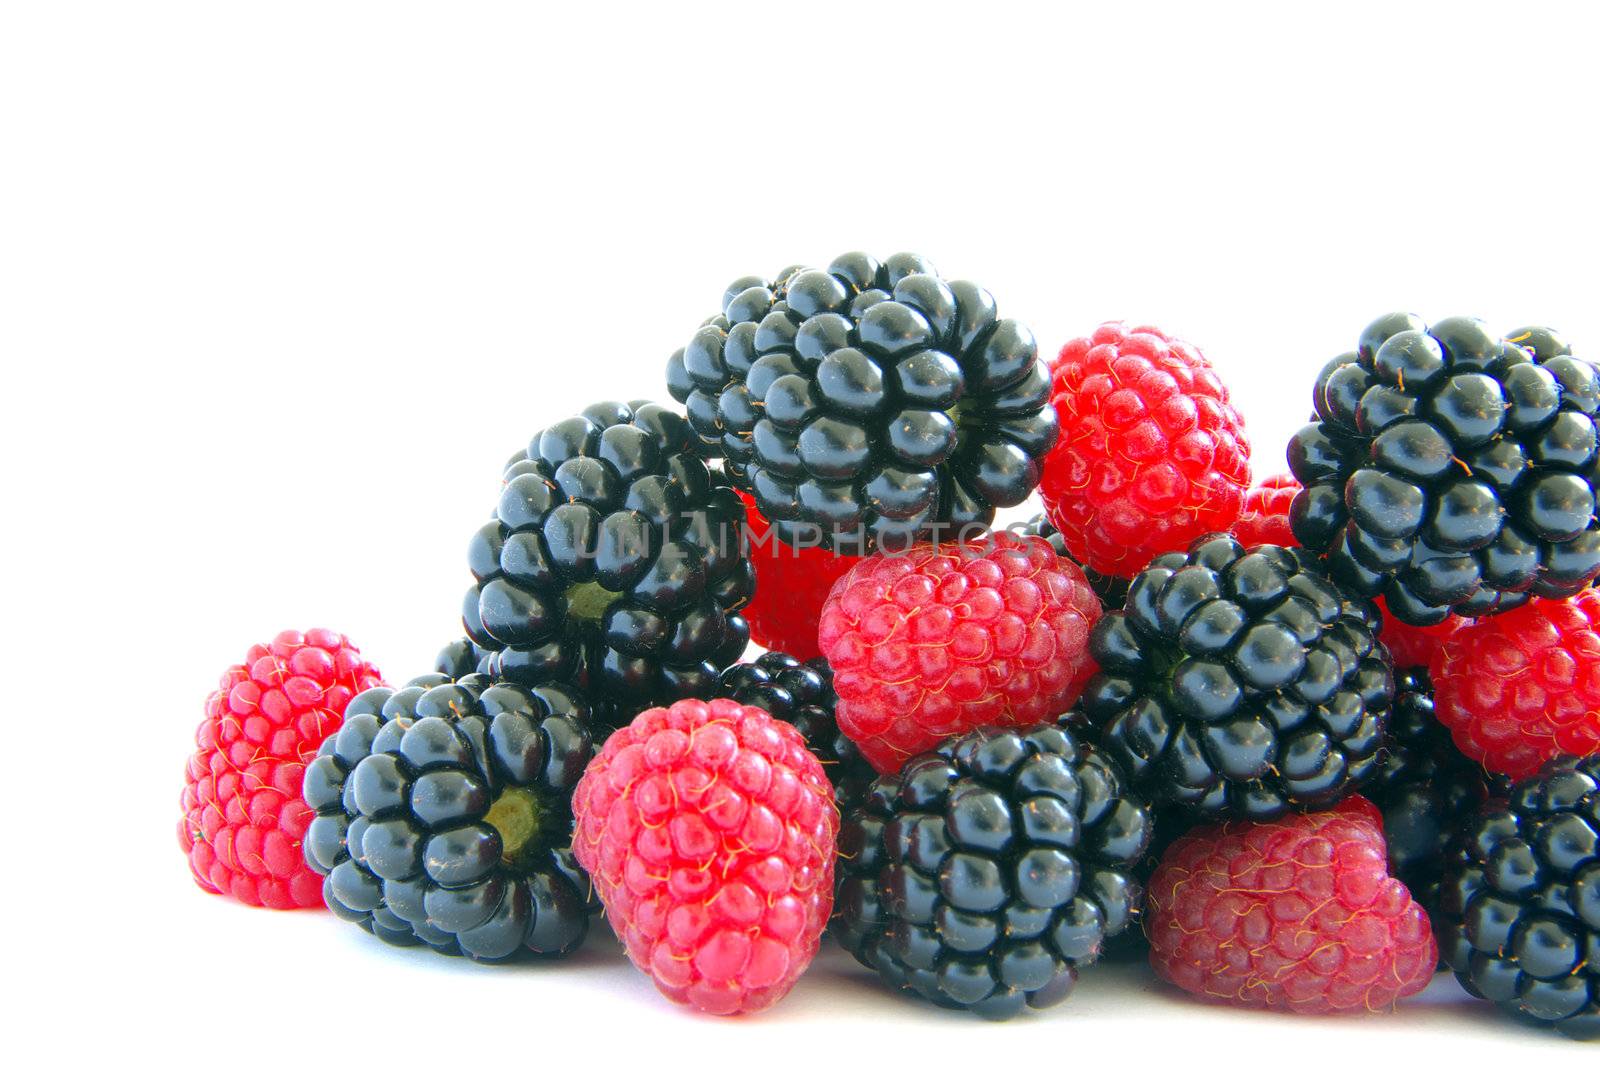 raspberry and blackberry  by Pakhnyushchyy